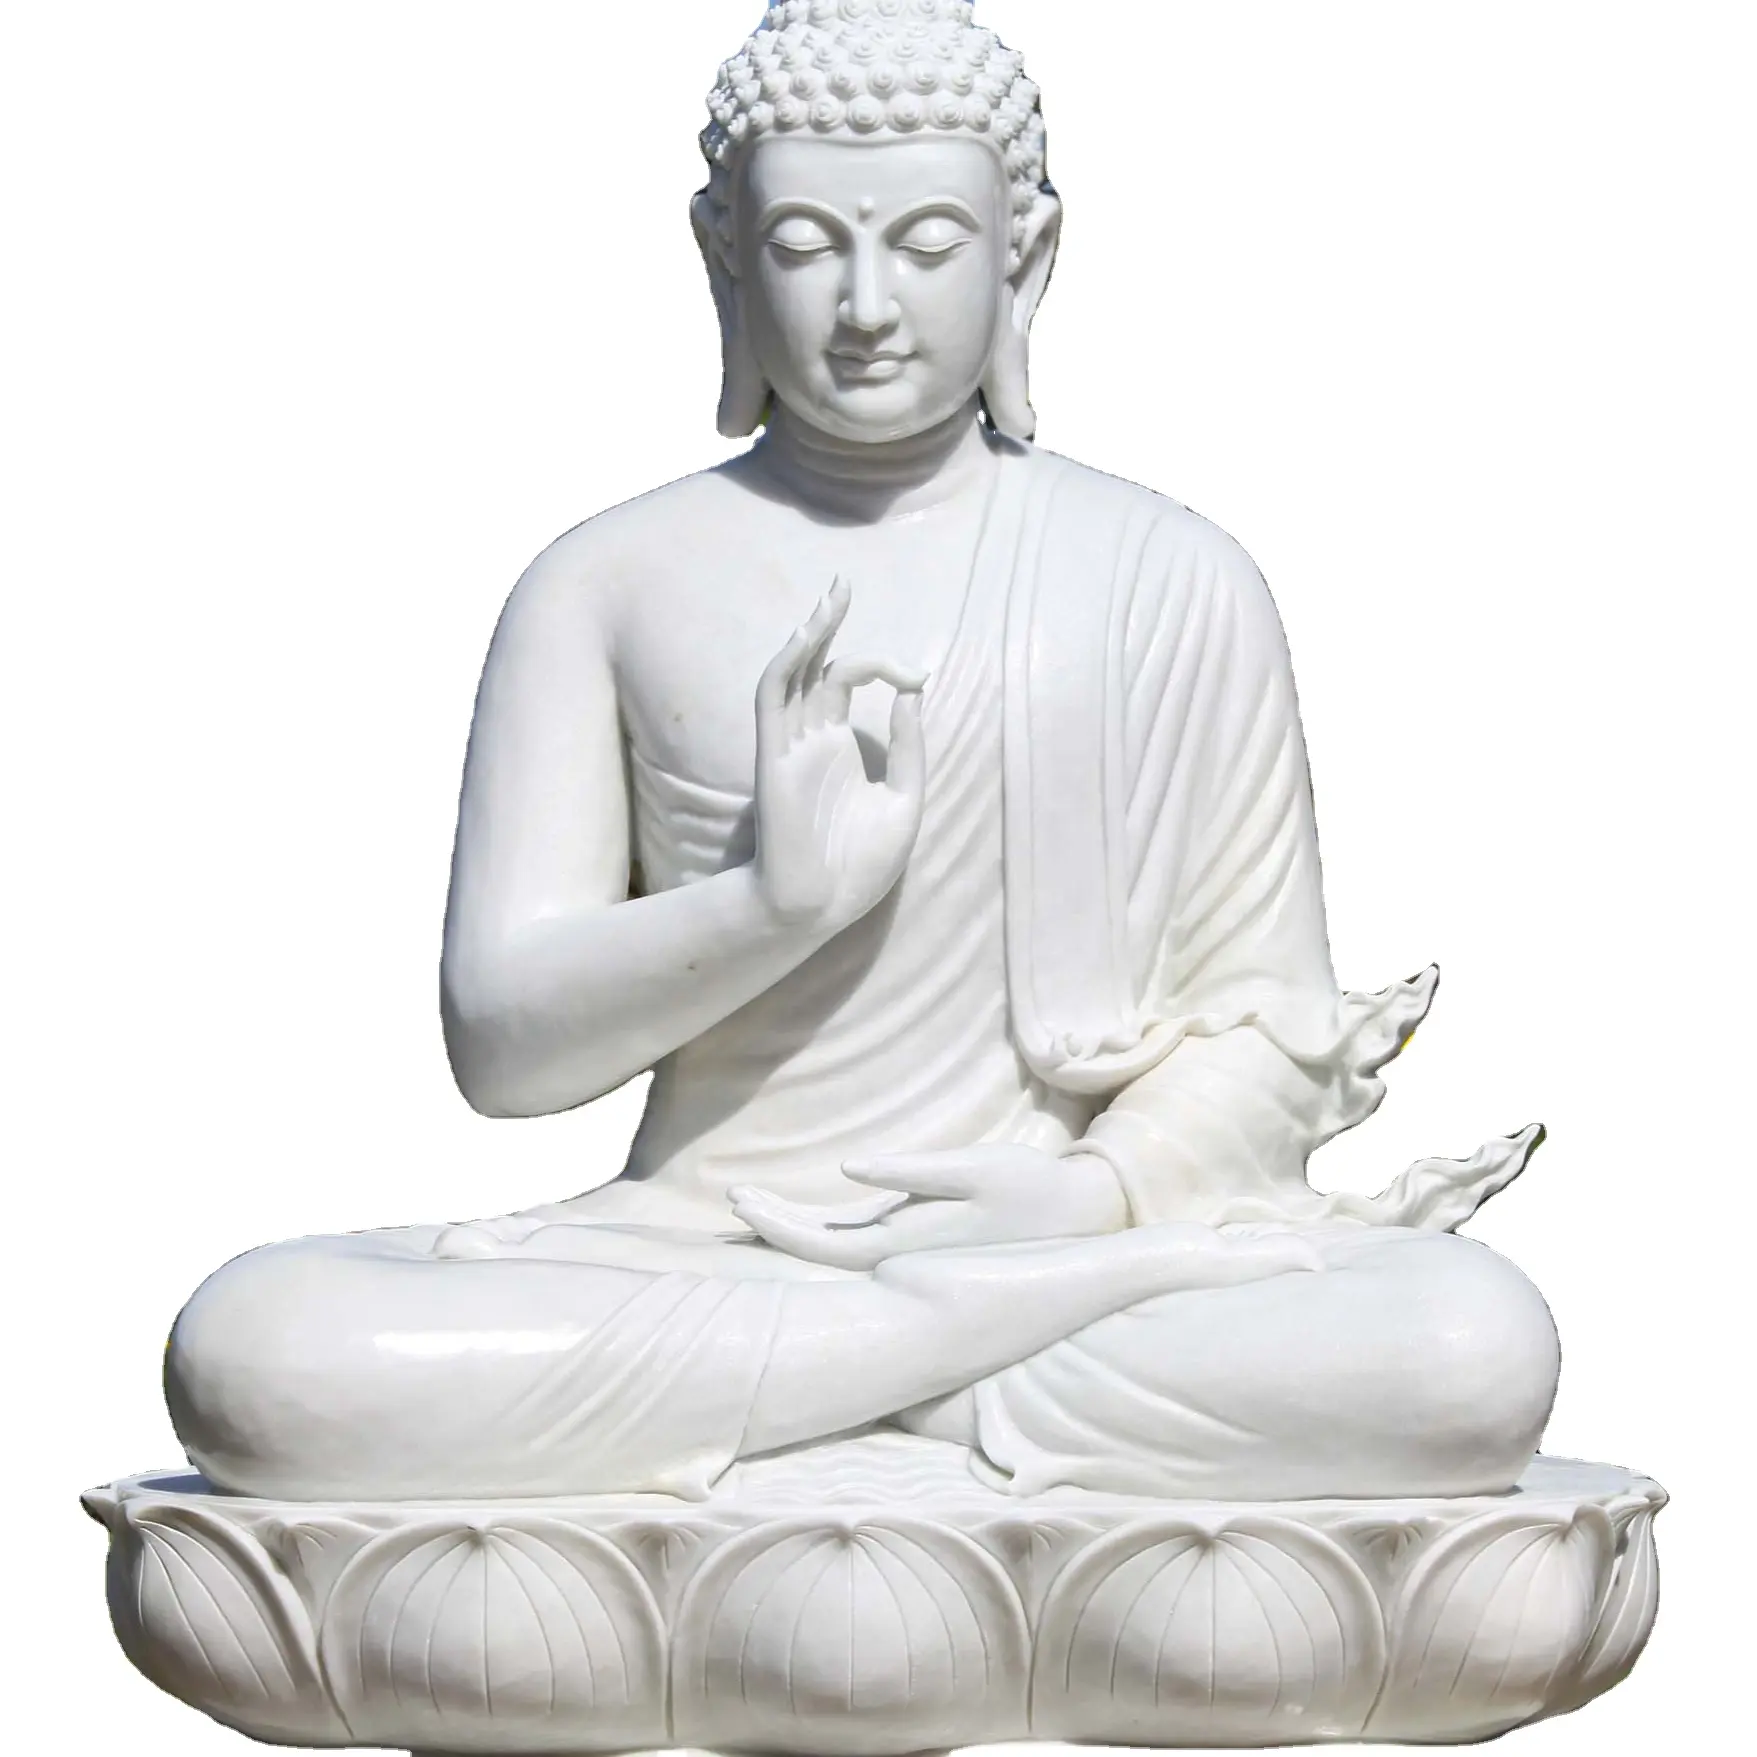 รูปปั้นพระพุทธรูปนั่งขนาดใหญ่รูปปั้นหินอ่อนสีขาวสอนพระพุทธรูปด้วยไฟที่สวยงามบนดอกบัว